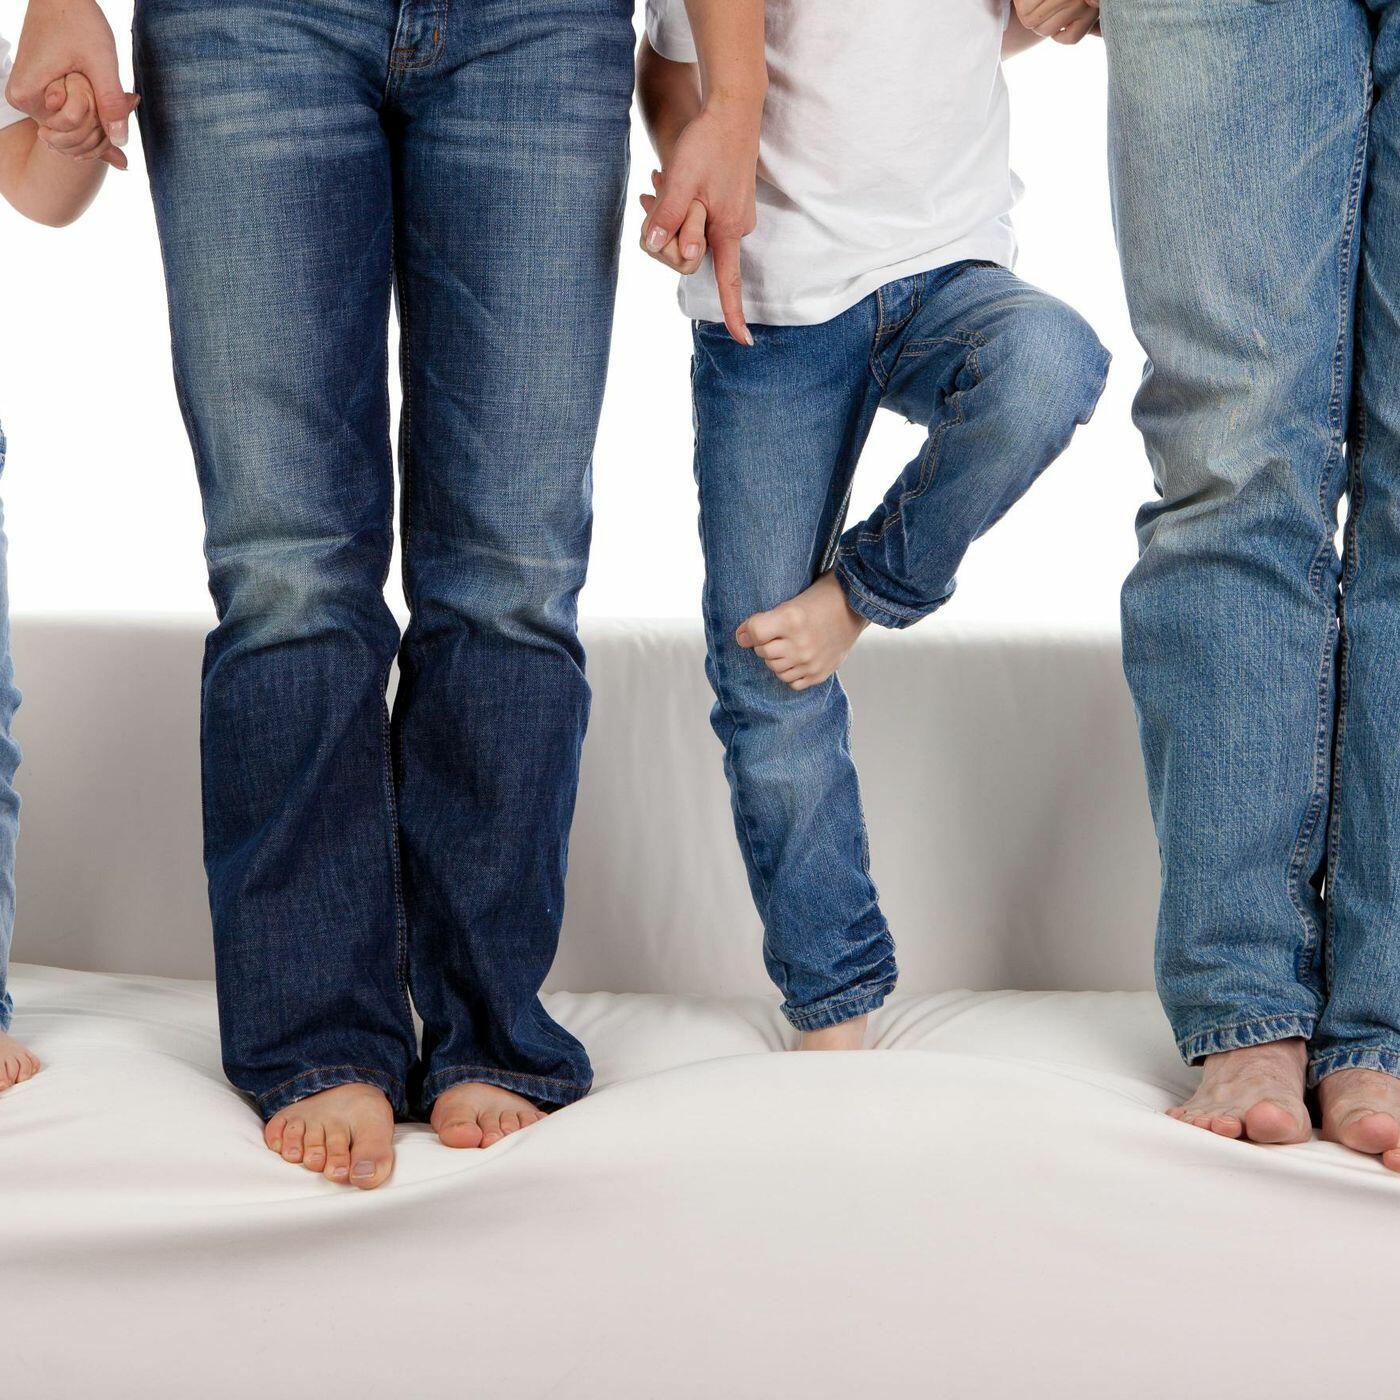 Фотосессия семьи в джинсе